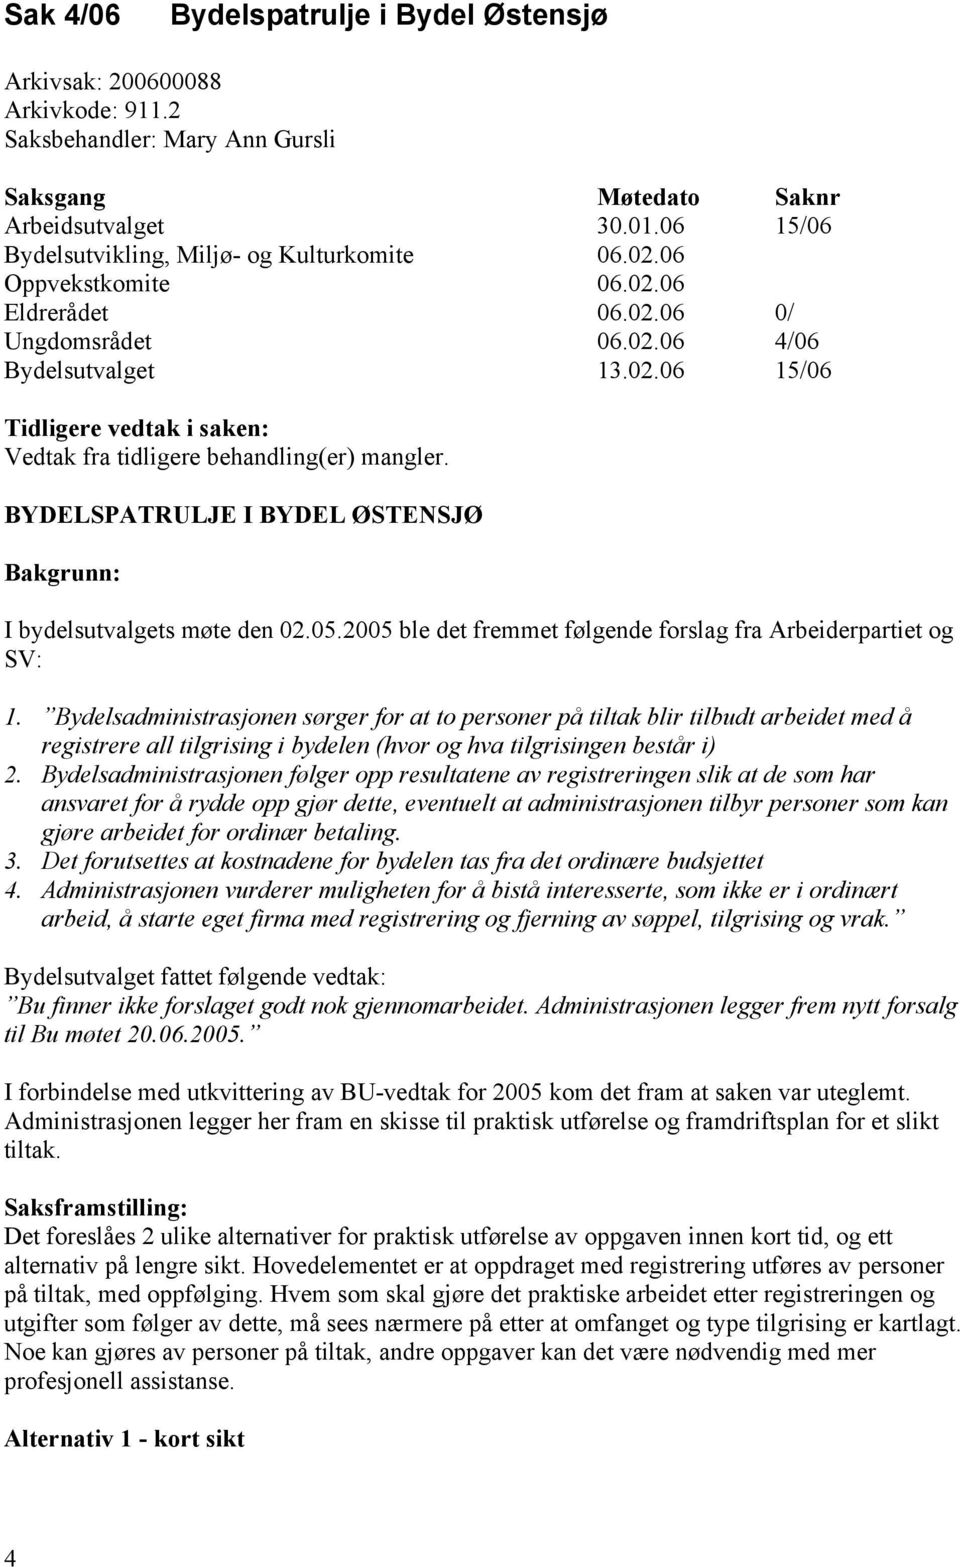 BYDELSPATRULJE I BYDEL ØSTENSJØ Bakgrunn: I bydelsutvalgets møte den 02.05.2005 ble det fremmet følgende forslag fra Arbeiderpartiet og SV: 1.